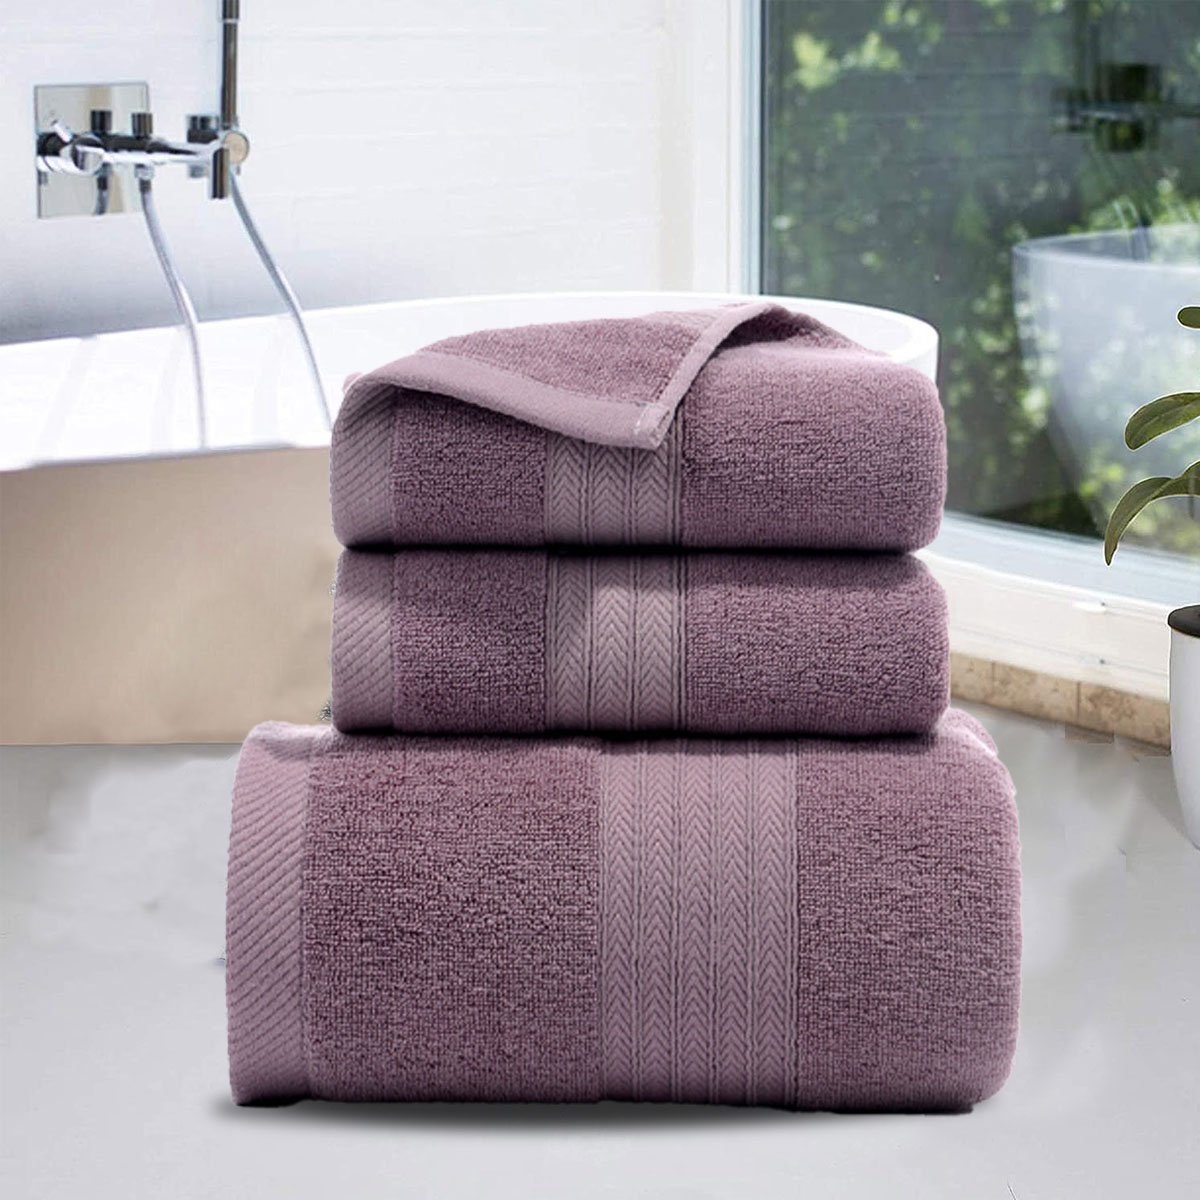 Jormftte Handtuch Set Handtücher Violett und Set-2xHandtuch,1xBadetuch,saugfähig zu Hause weich,für